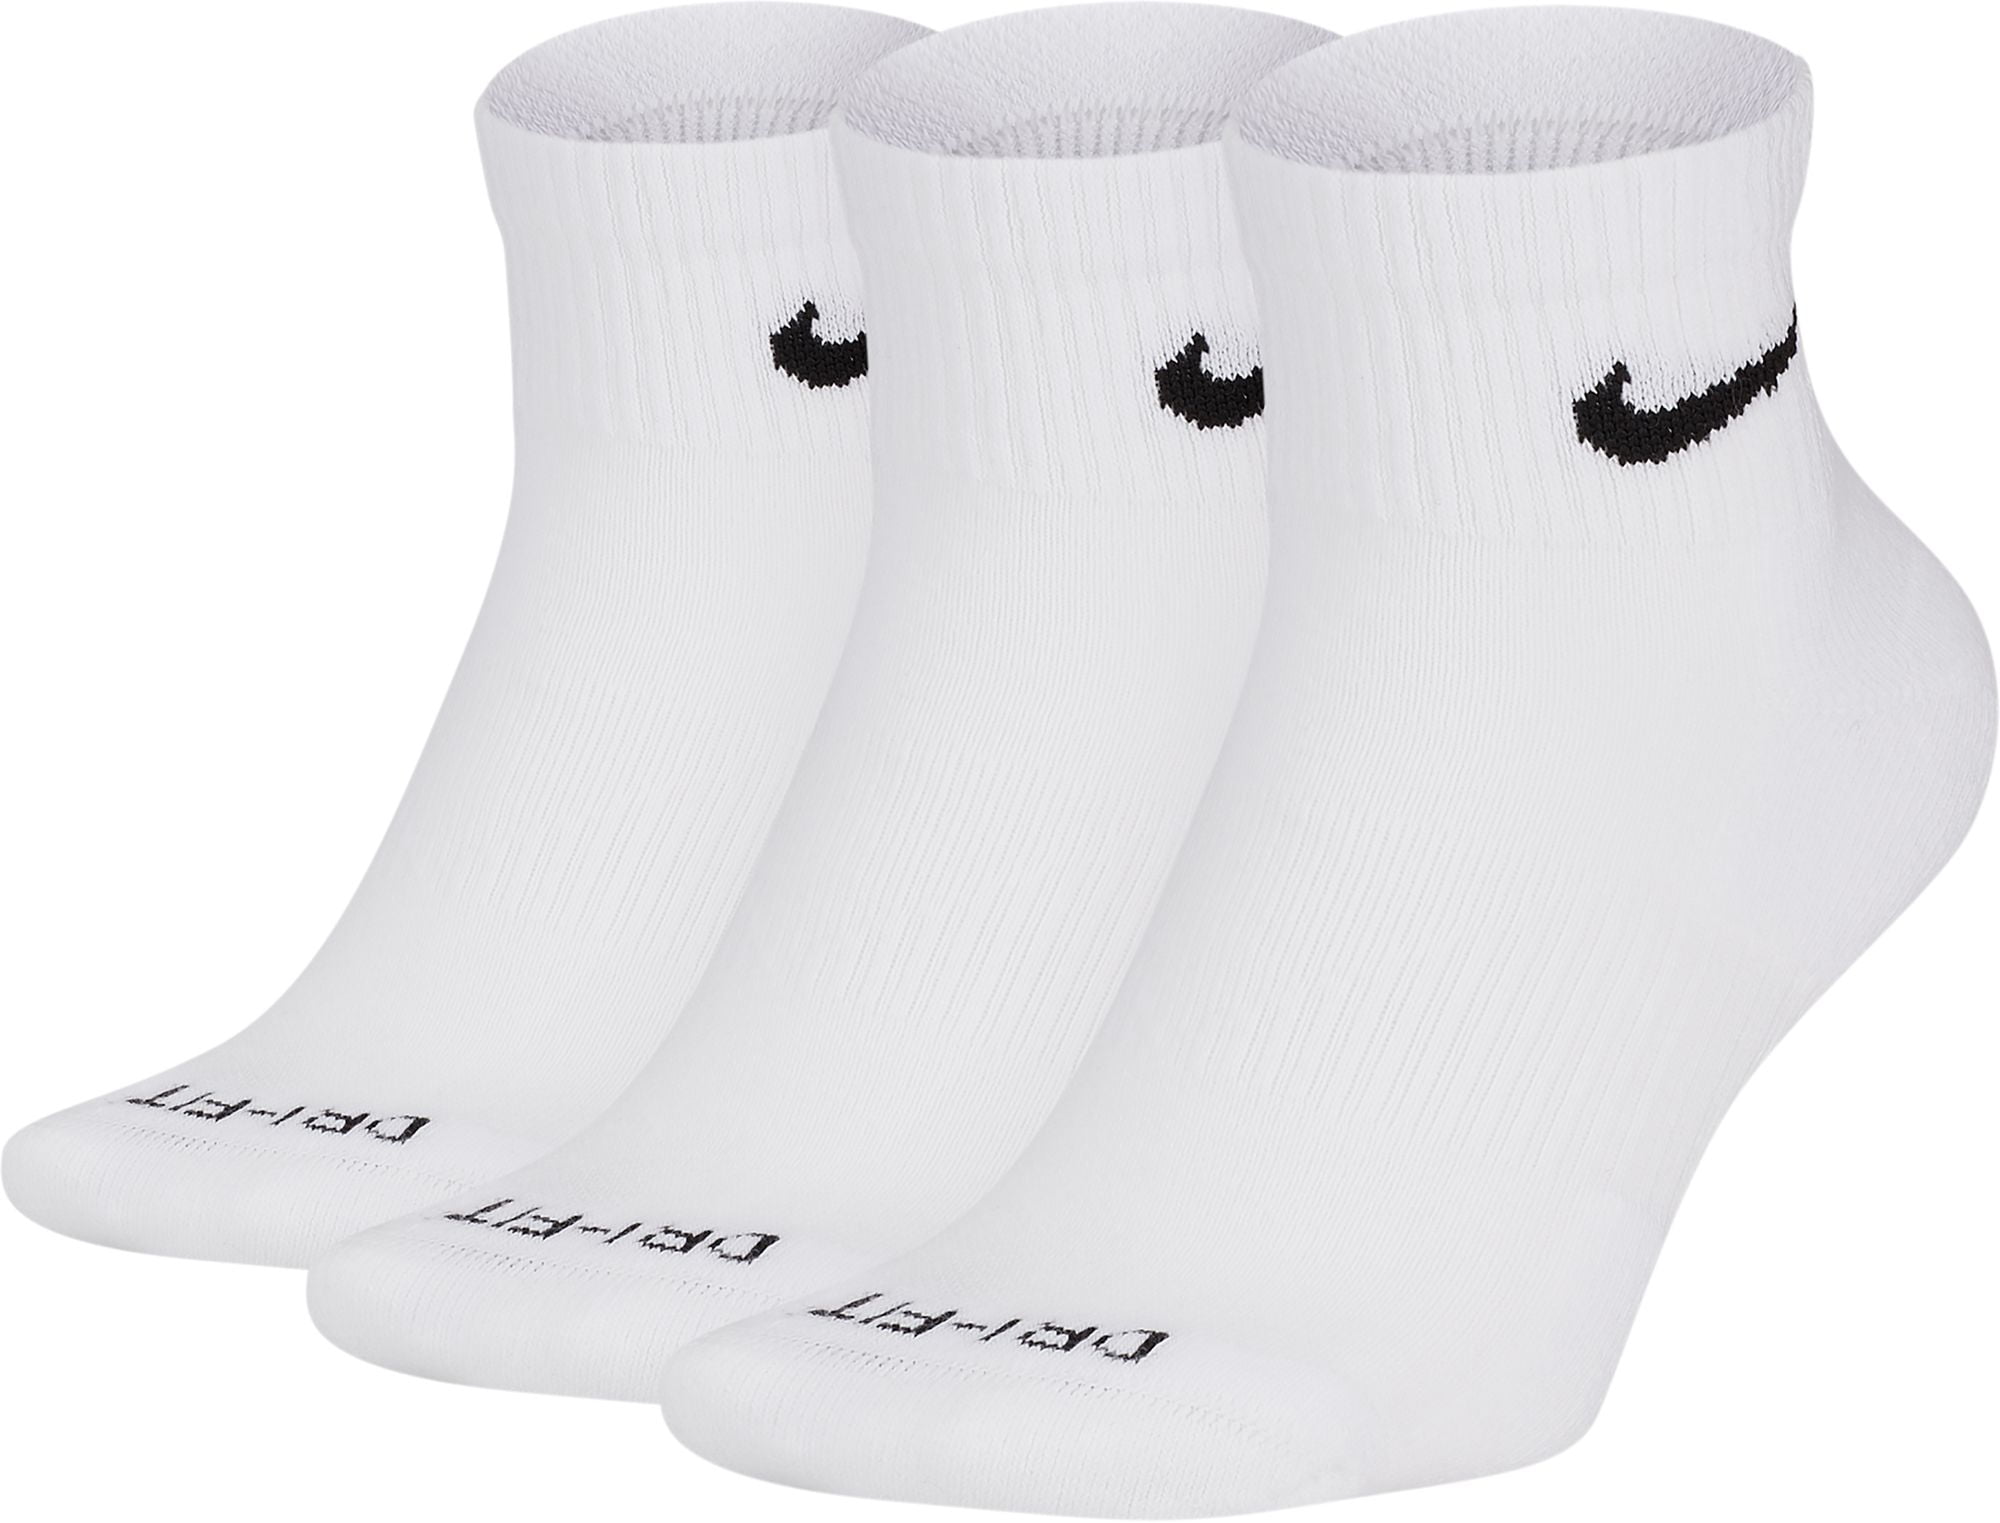 Nike Everyday Plus Cushion Ankle Training Socks 3Pack